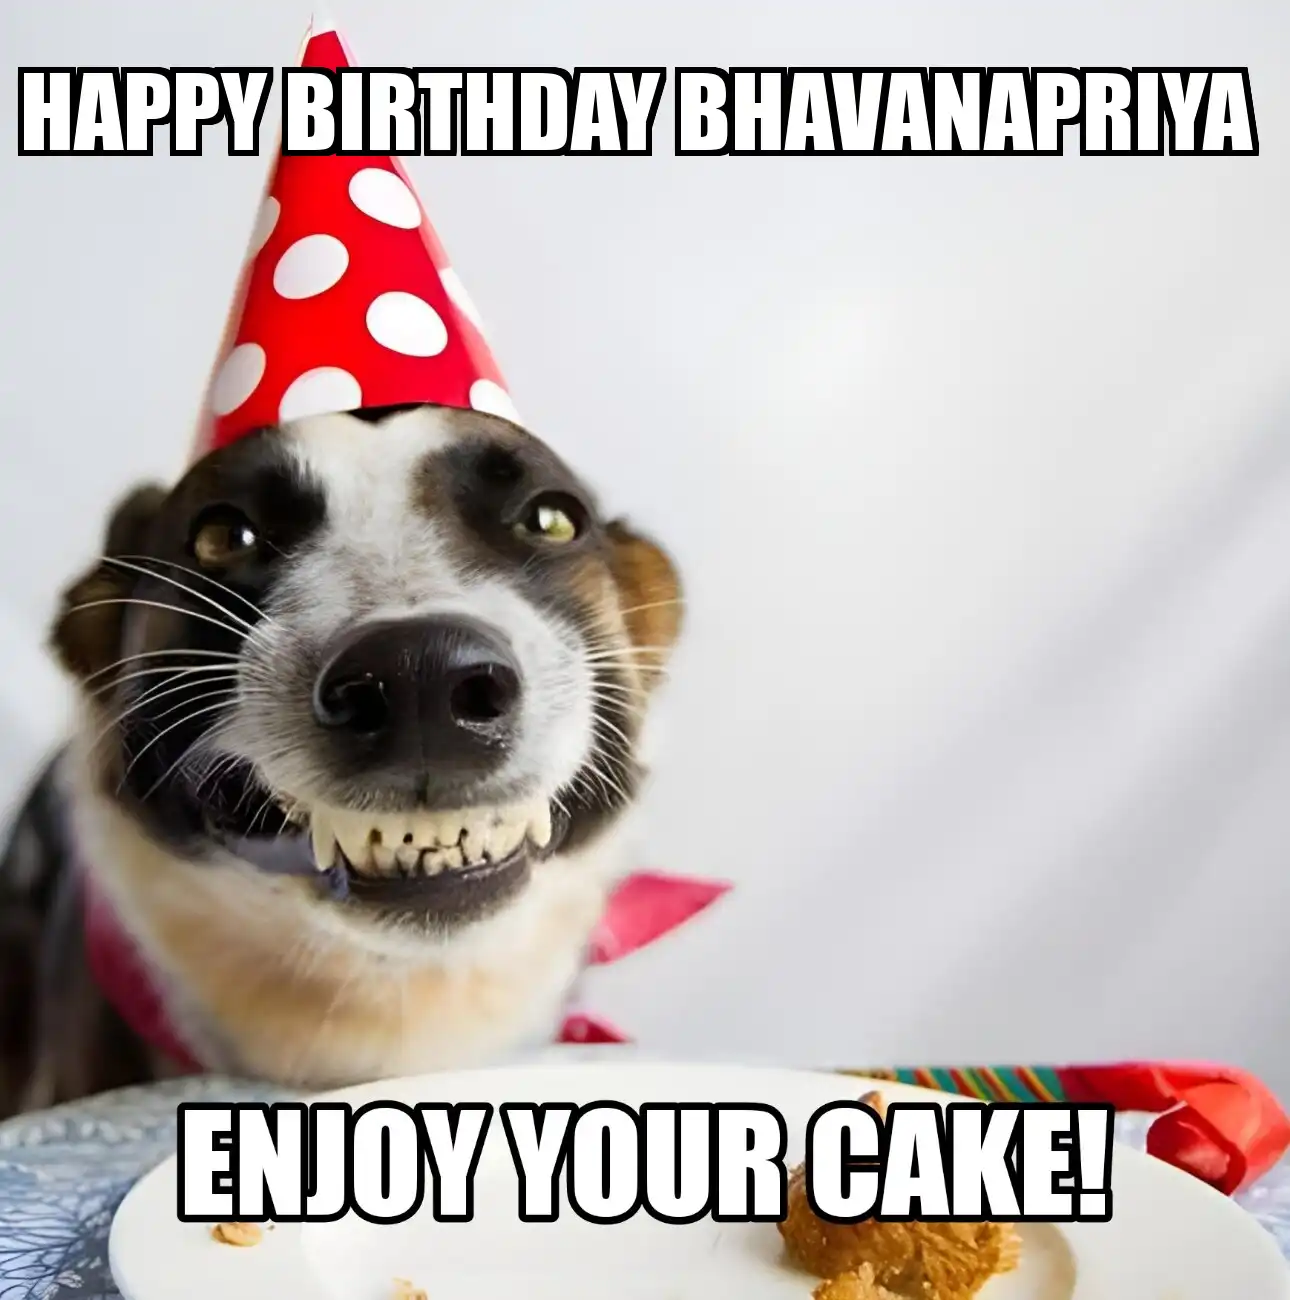 Happy Birthday Bhavanapriya Enjoy Your Cake Dog Meme